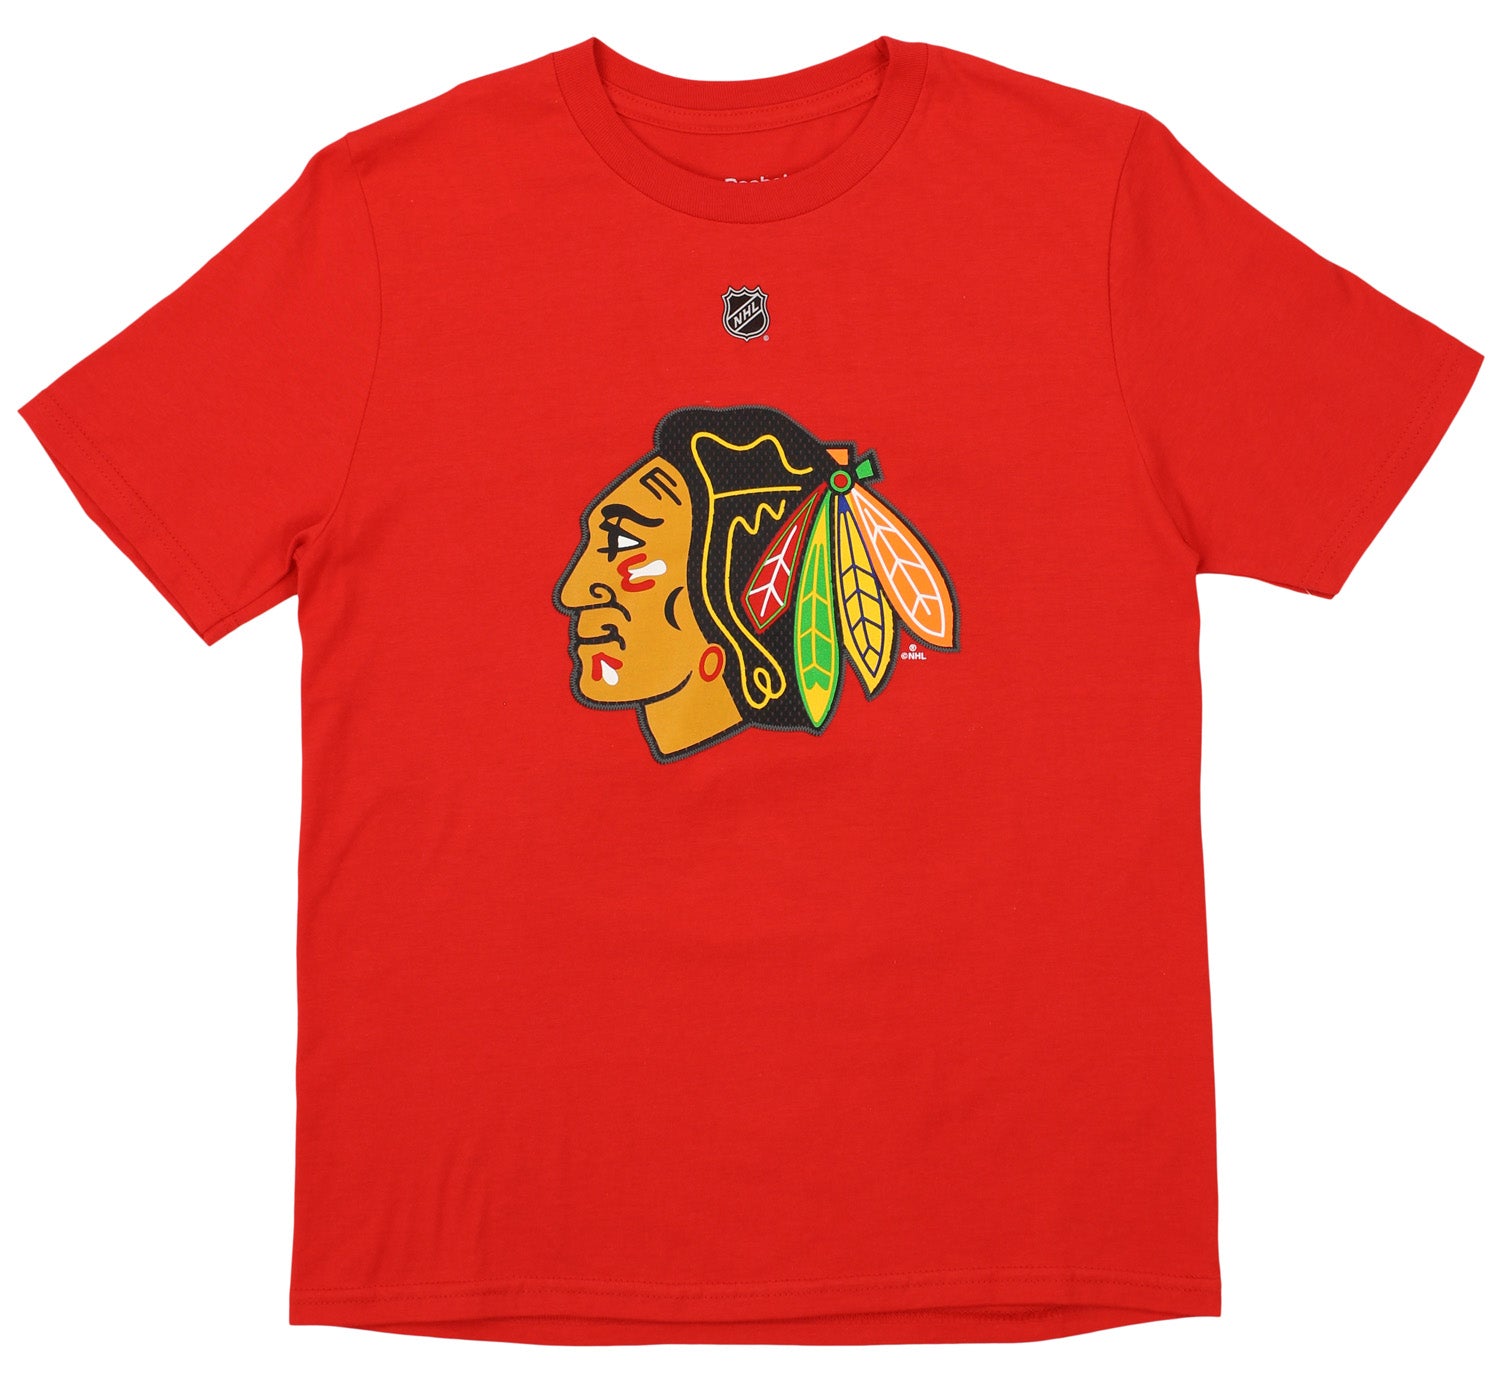 Chicago Blackhawks Marian Hossa T-shirt Men Small Hockey Red Reebok 81 HOF